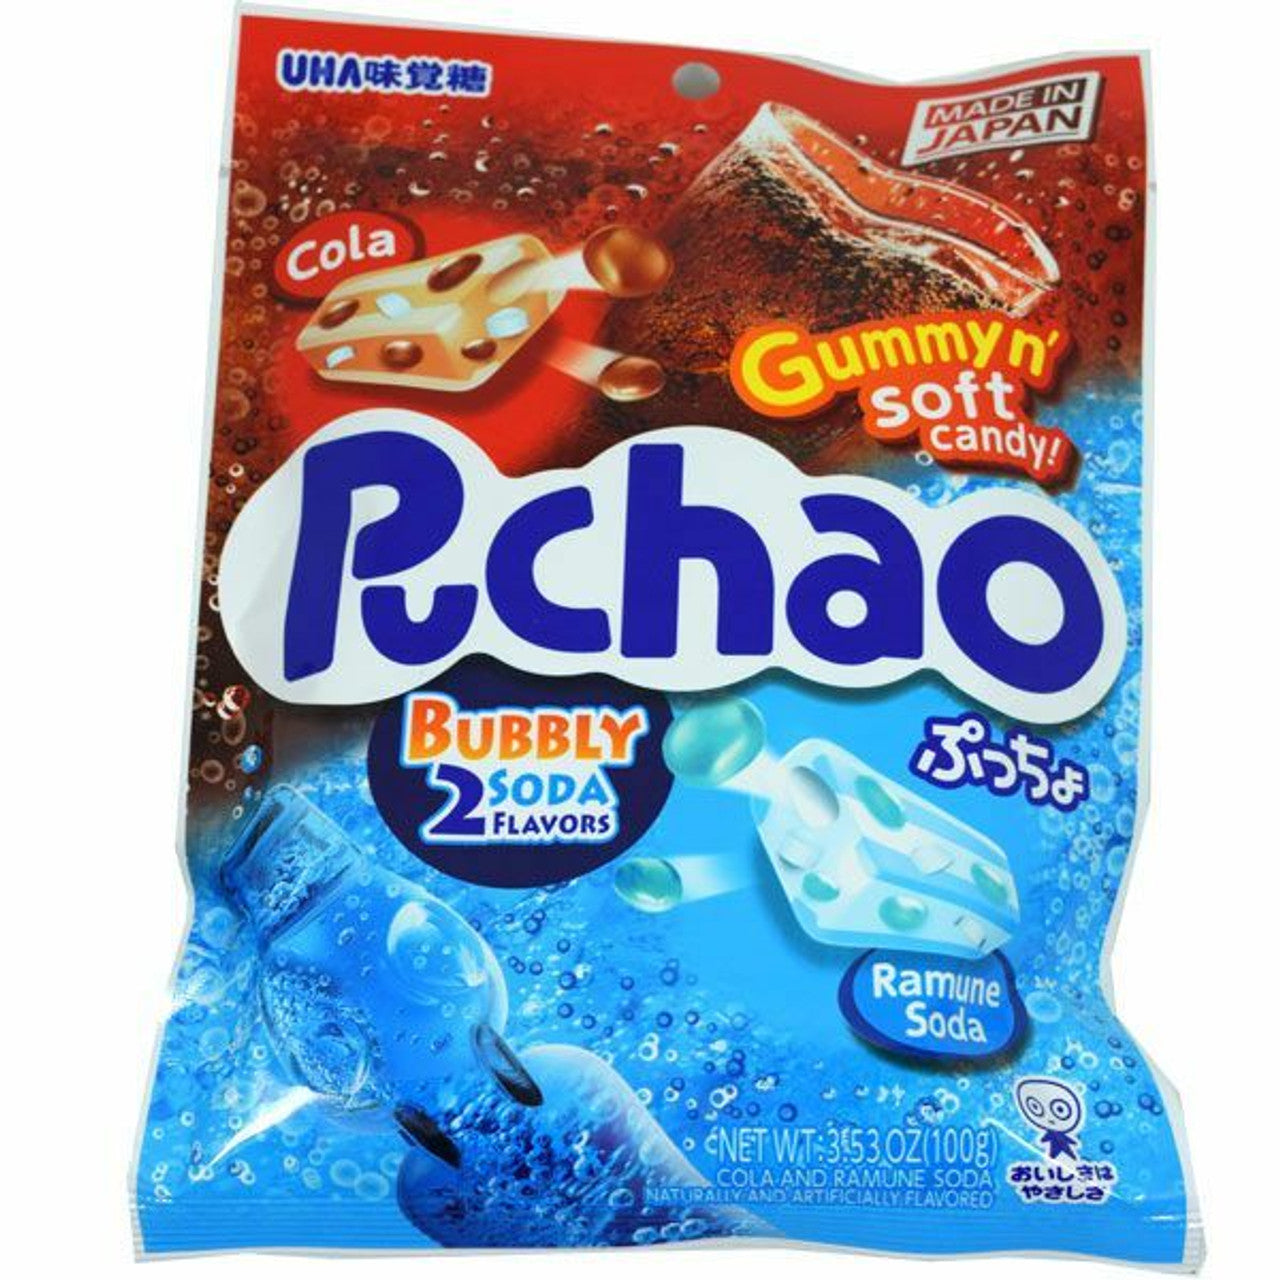 Puchao Cola & Soda Candy 3.53oz Bag